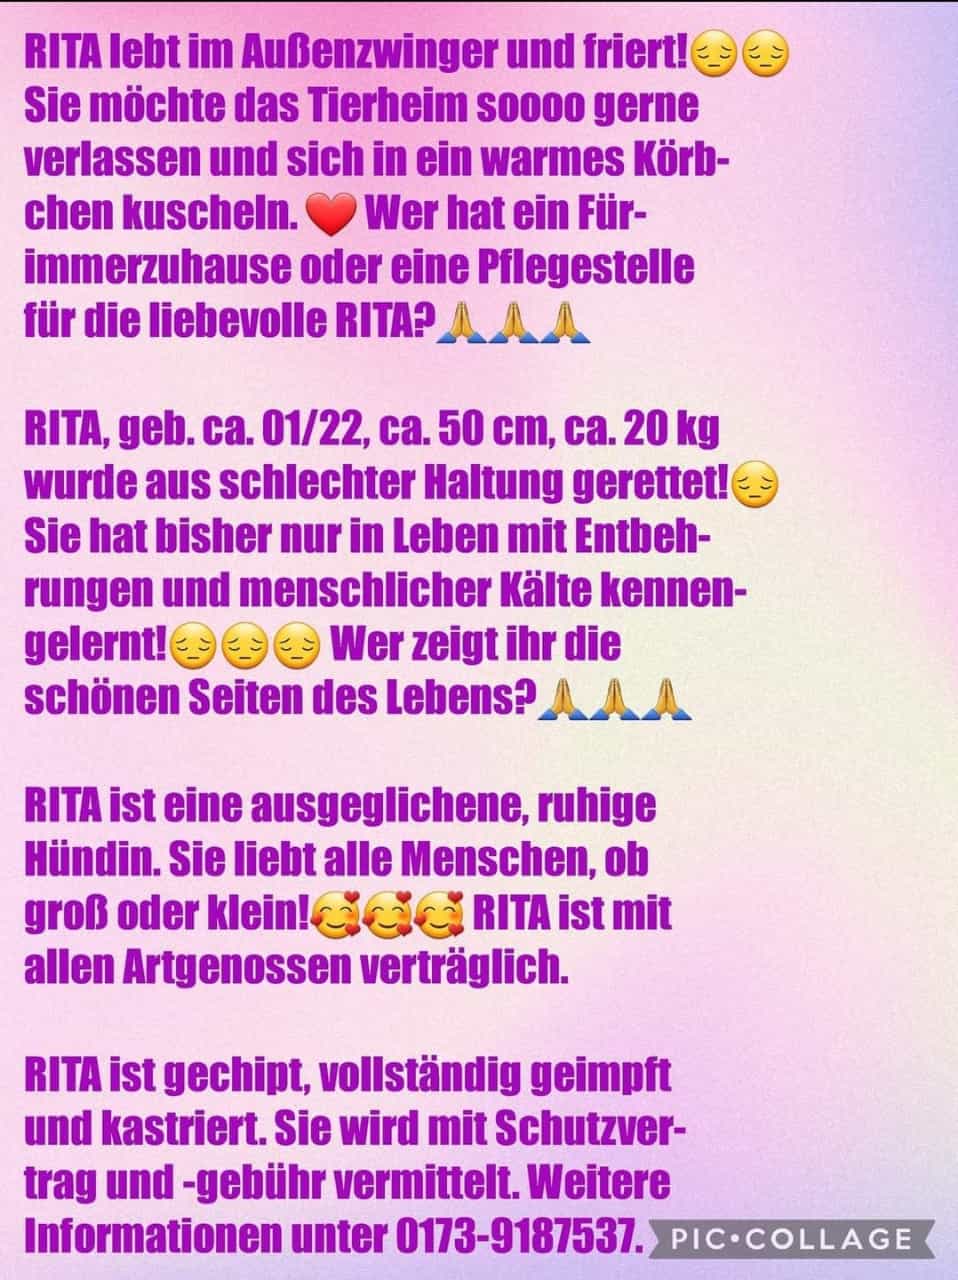 Rita text